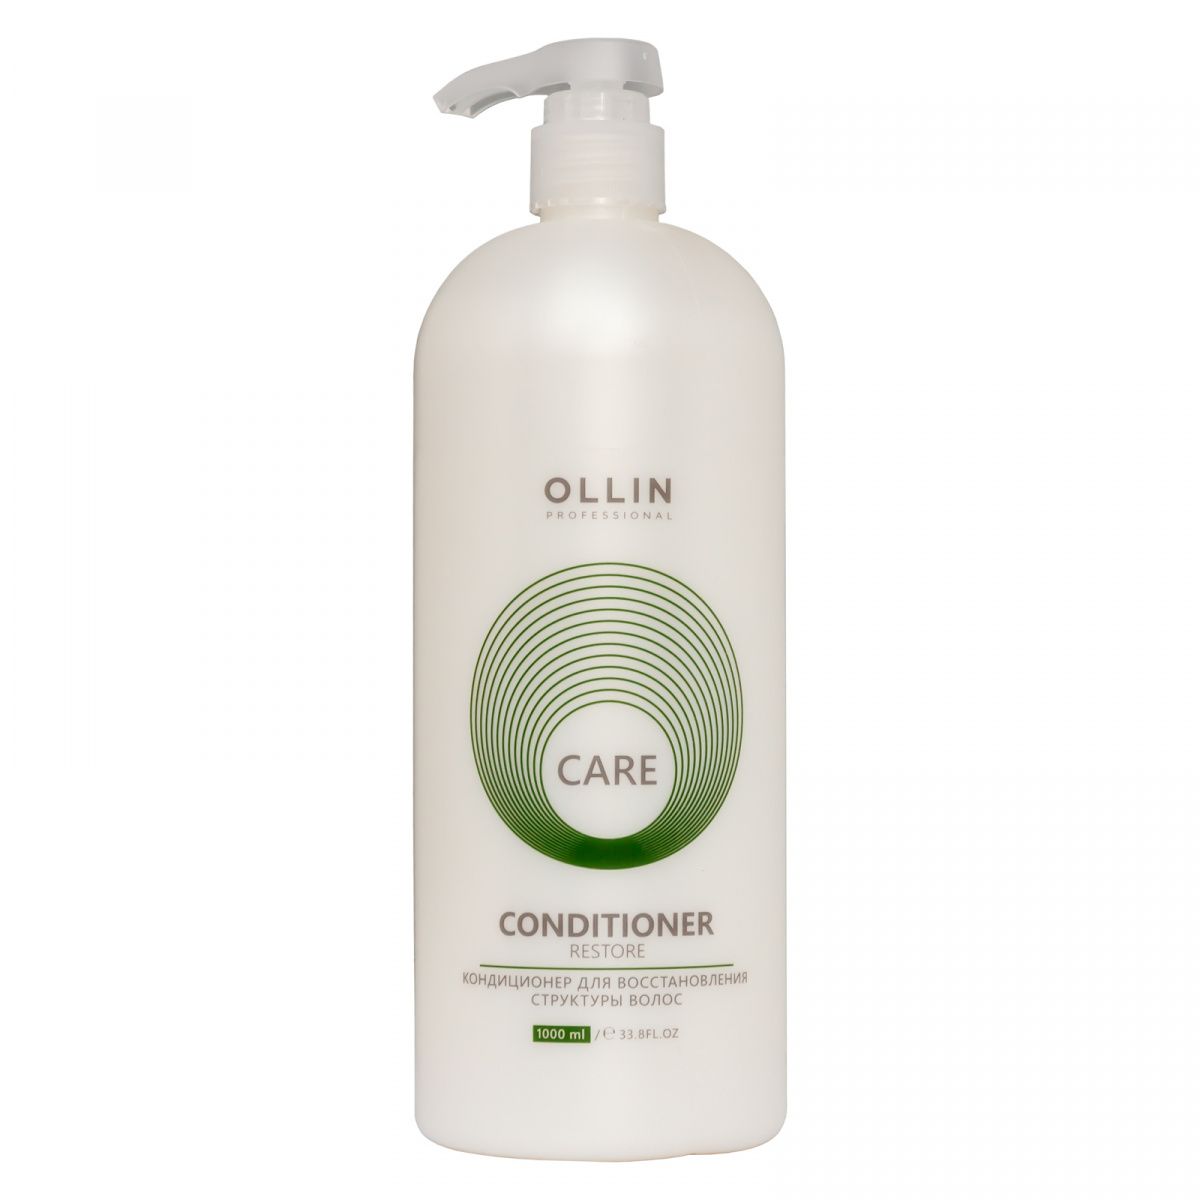 Ollin Care Restore Conditioner 38184